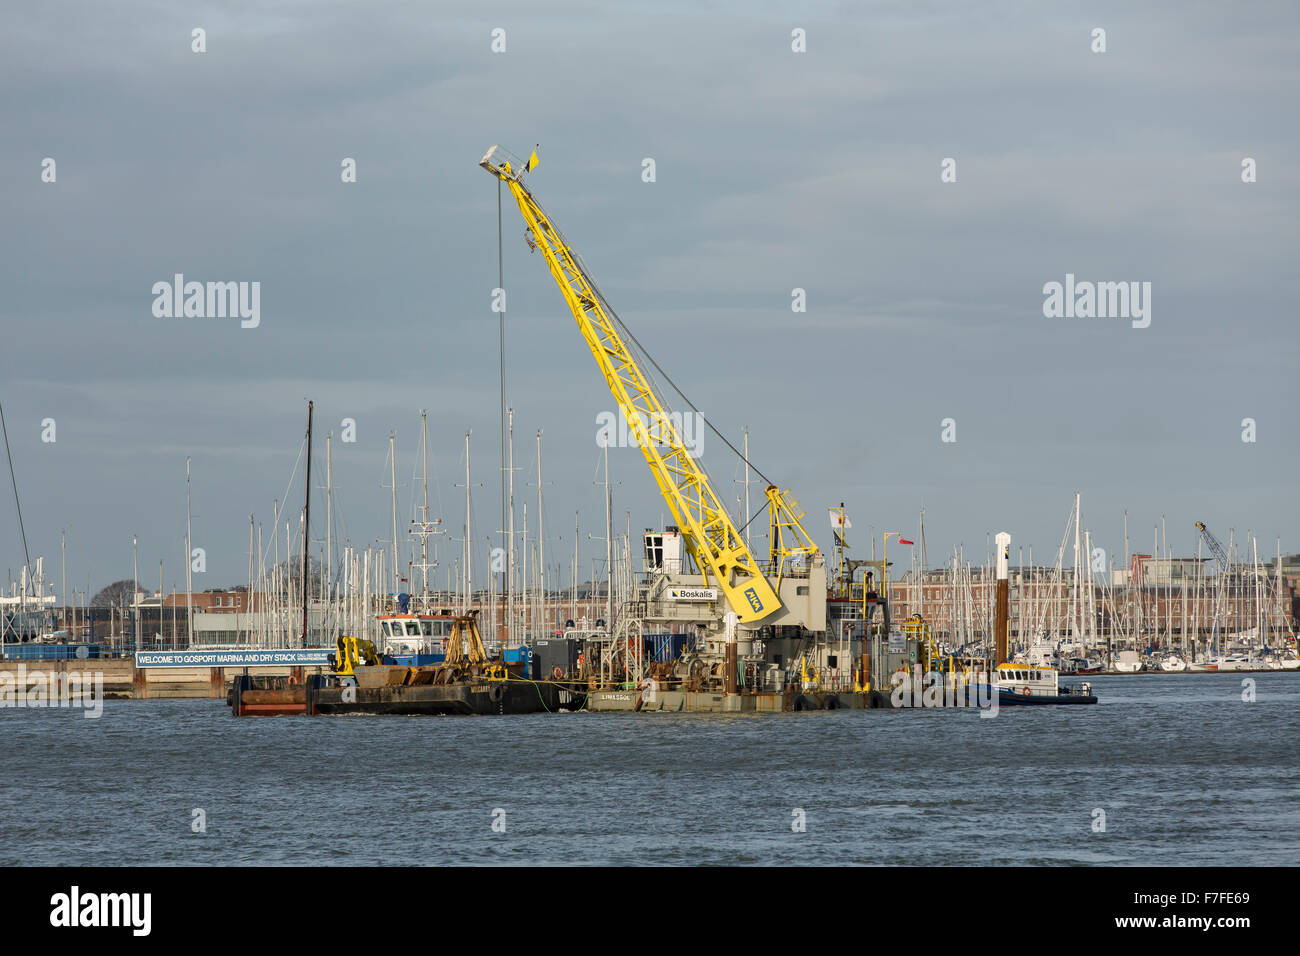 Grue sur un ponton flottant dans le port de Portsmouth. L'exécution de travaux de dragage dans le cadre de la préparation du nouveau porte-avions RN Banque D'Images